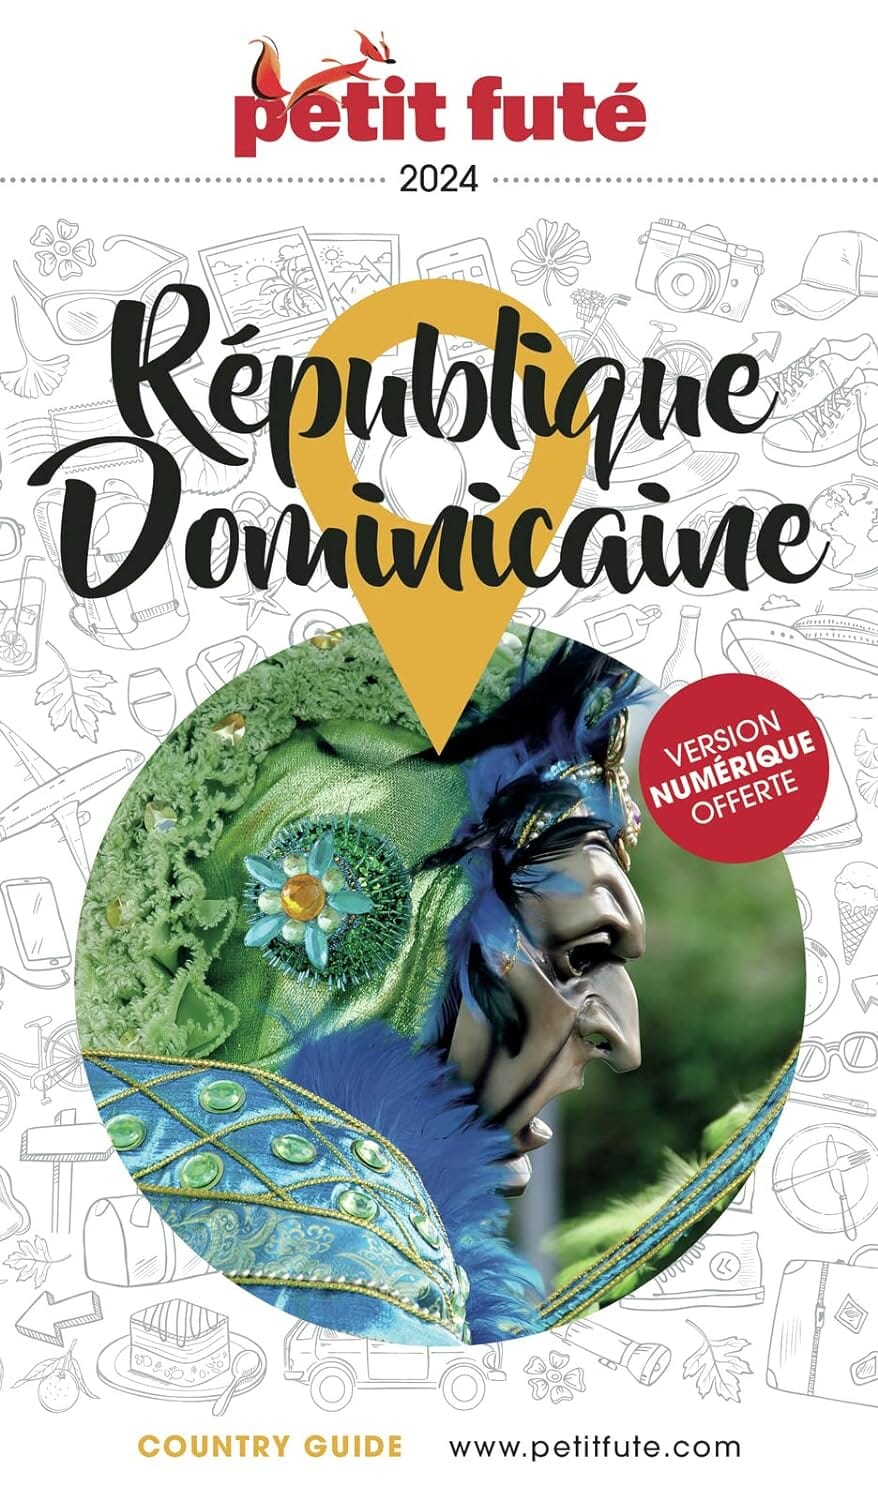 Guide de voyage - République Dominicaine 2024 | Petit Futé guide de voyage Petit Futé 